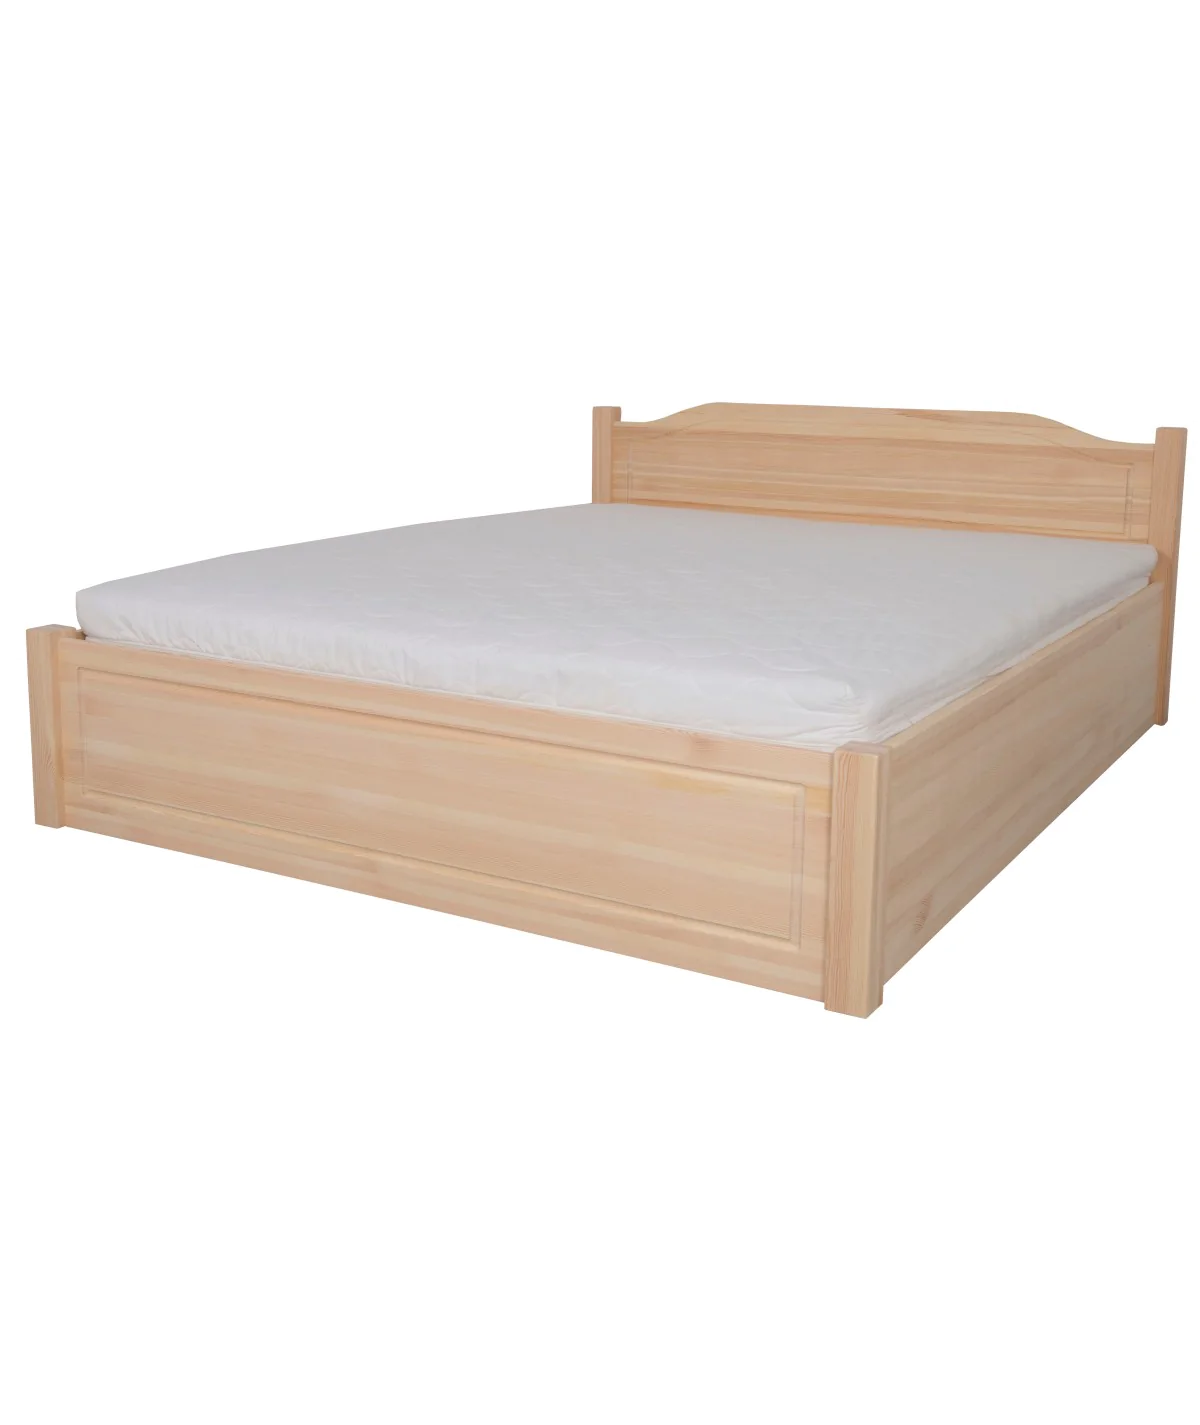 Łóżko bukowe OLIWIN 5 STOLMIS podnoszone na ramie drewnianej